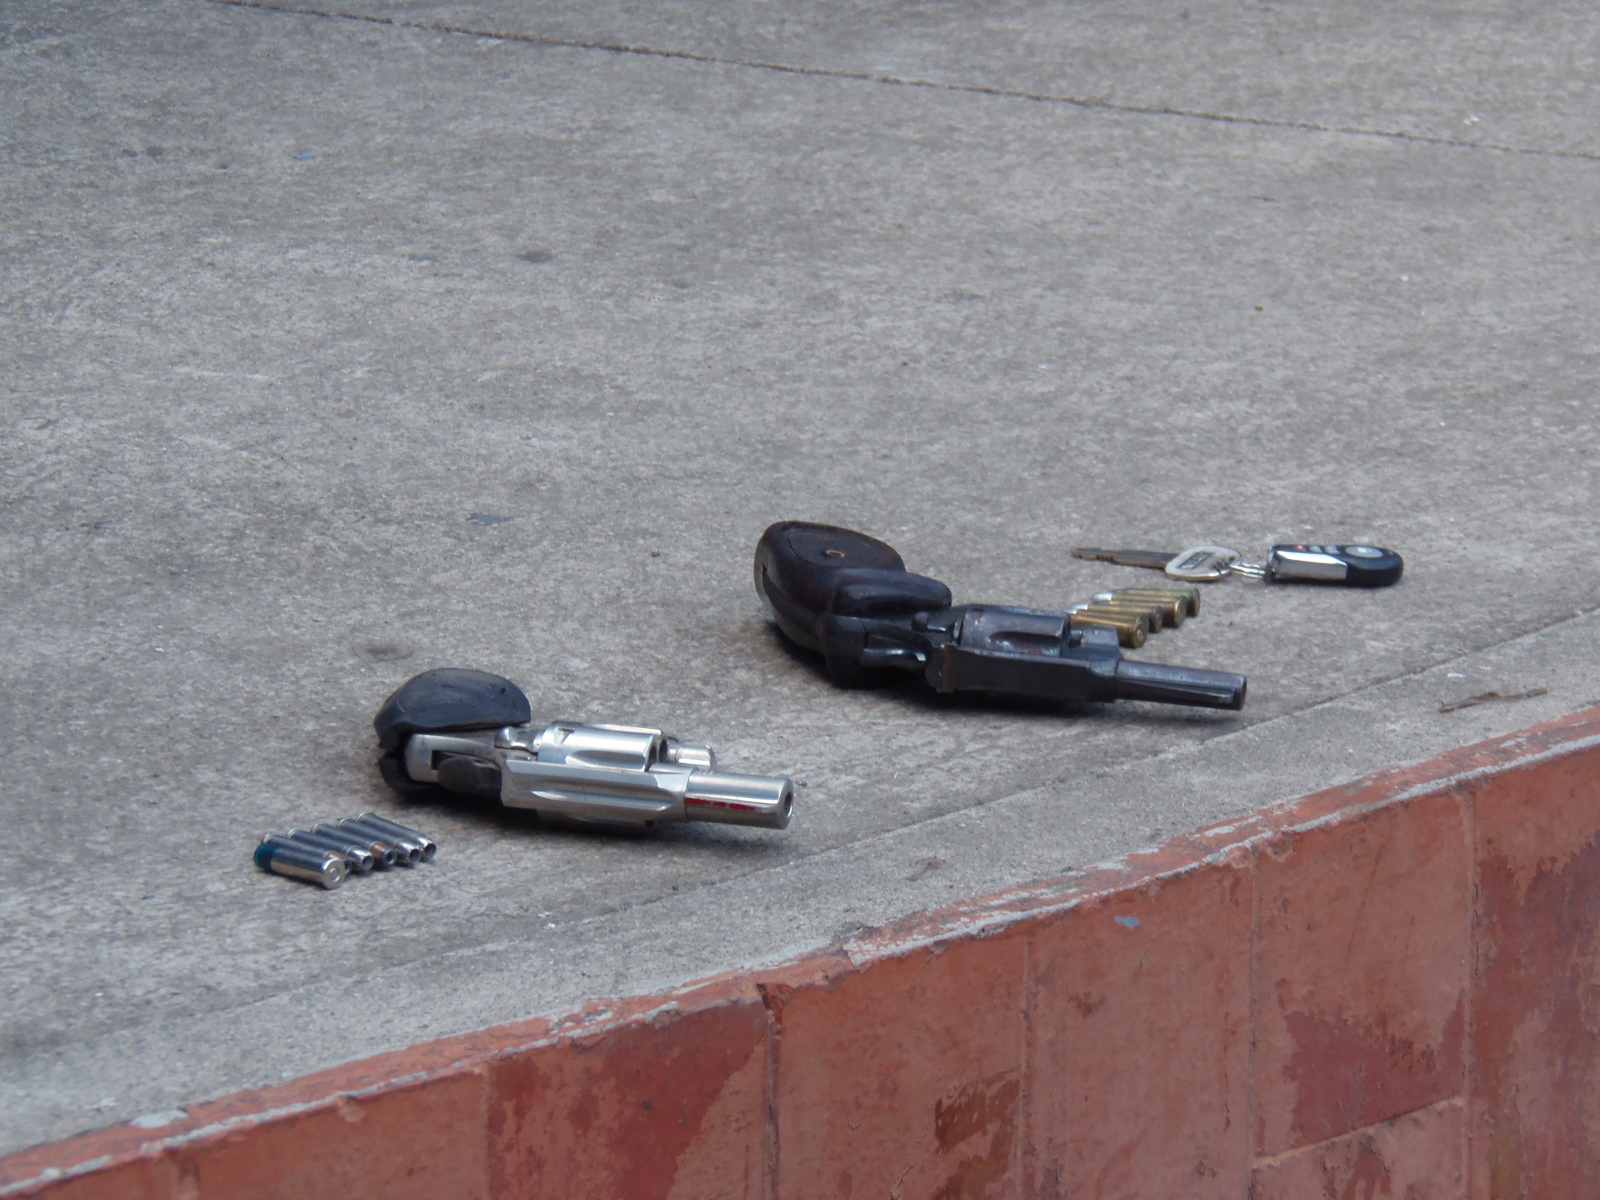 Condenan pandillero de la 18 por Tenencia y Portación Ilegal de Arma en Ahuachapán